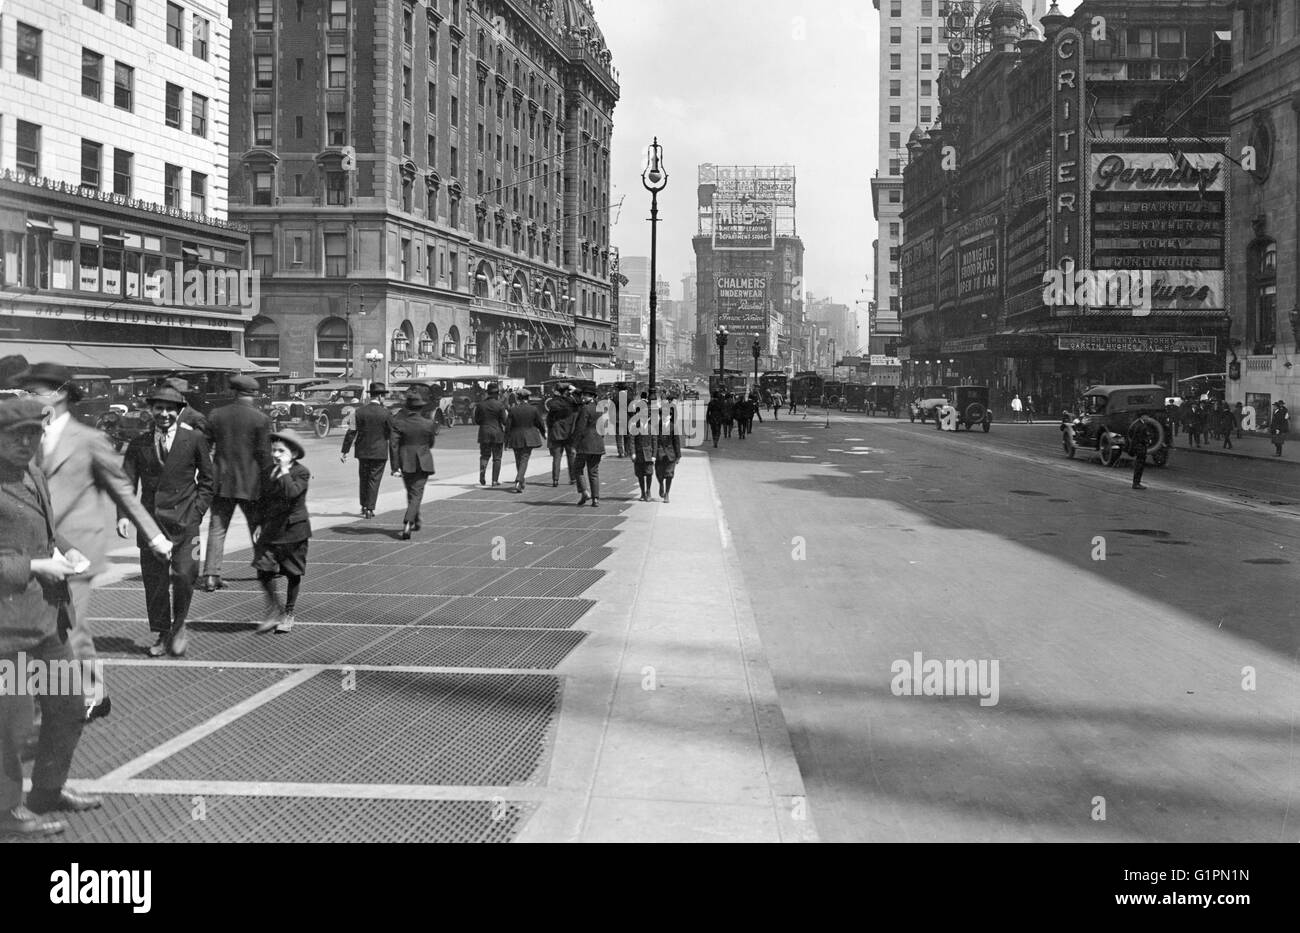 NEW YORK: TIMES SQUARE.  44th Street und Broadway, am Times Square in New York City; Das Olympia Theatre Komplex ist auf der rechten Seite, darunter Loew es Theater und Kino Kriterium. Fotografie, 1921. Stockfoto